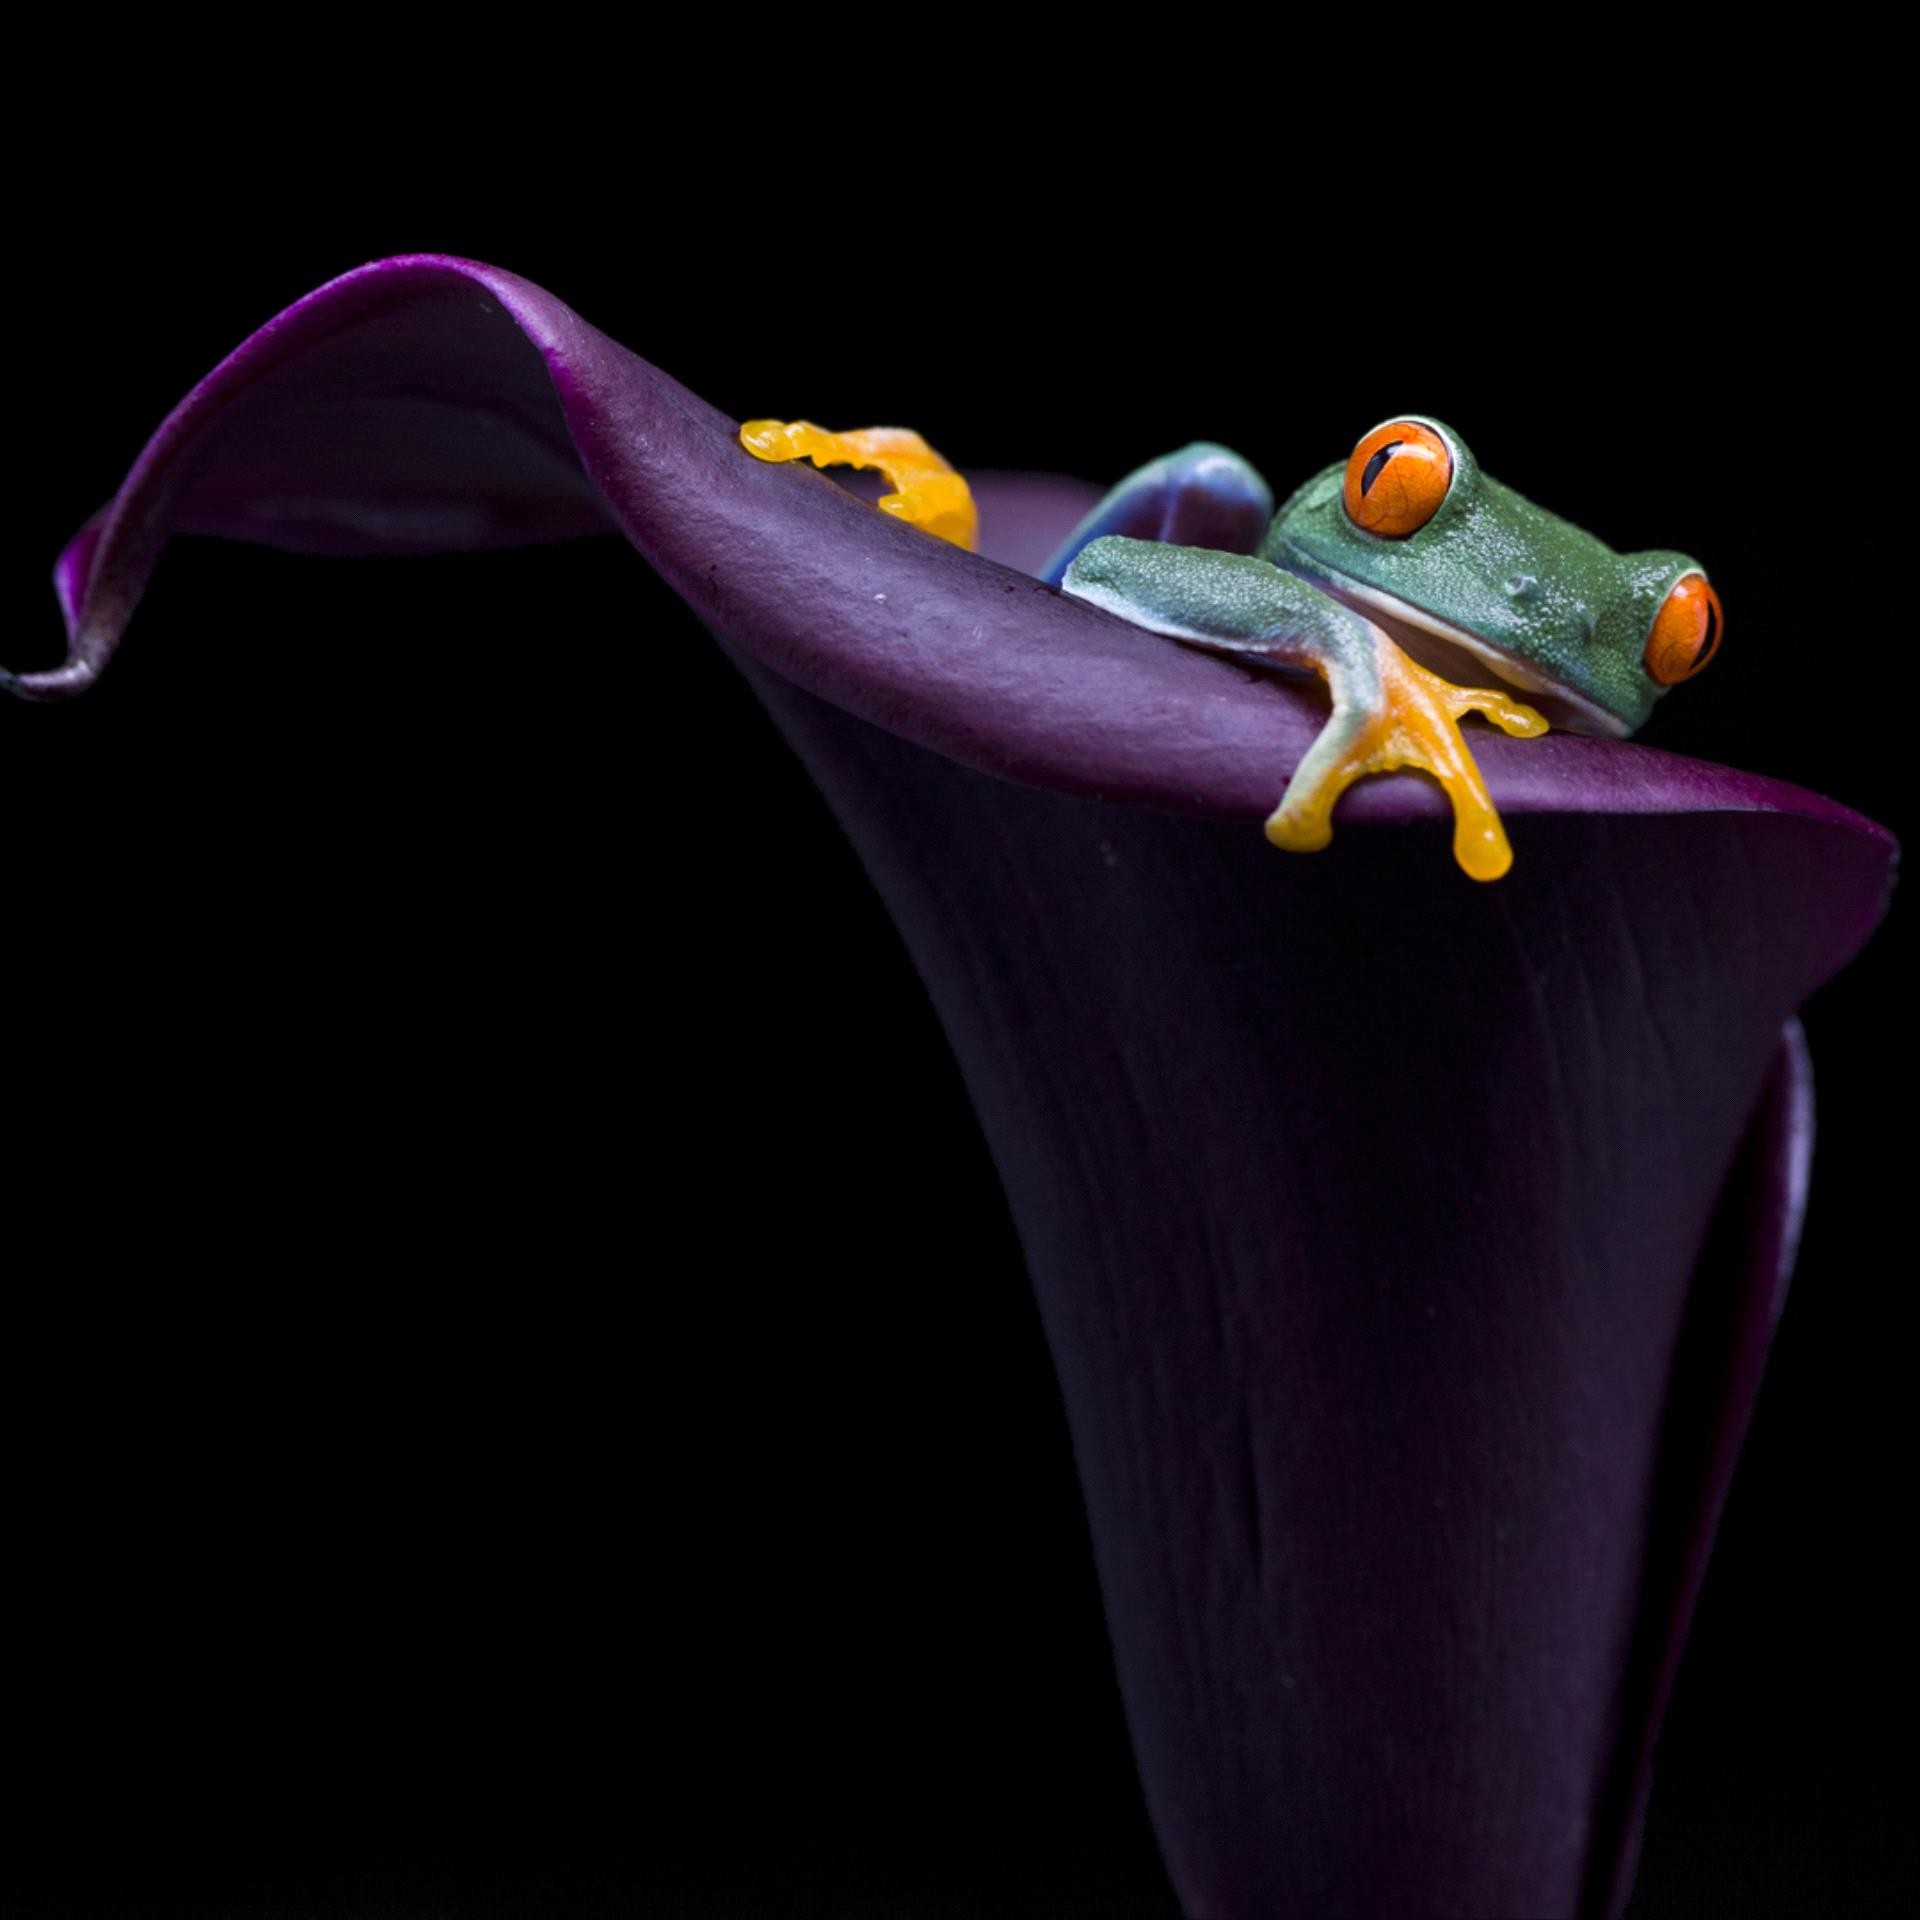 3 место в категории  Красота природы. Карликовая лягушка в тропических лесах Коста-Рики. Автор Лян Ву